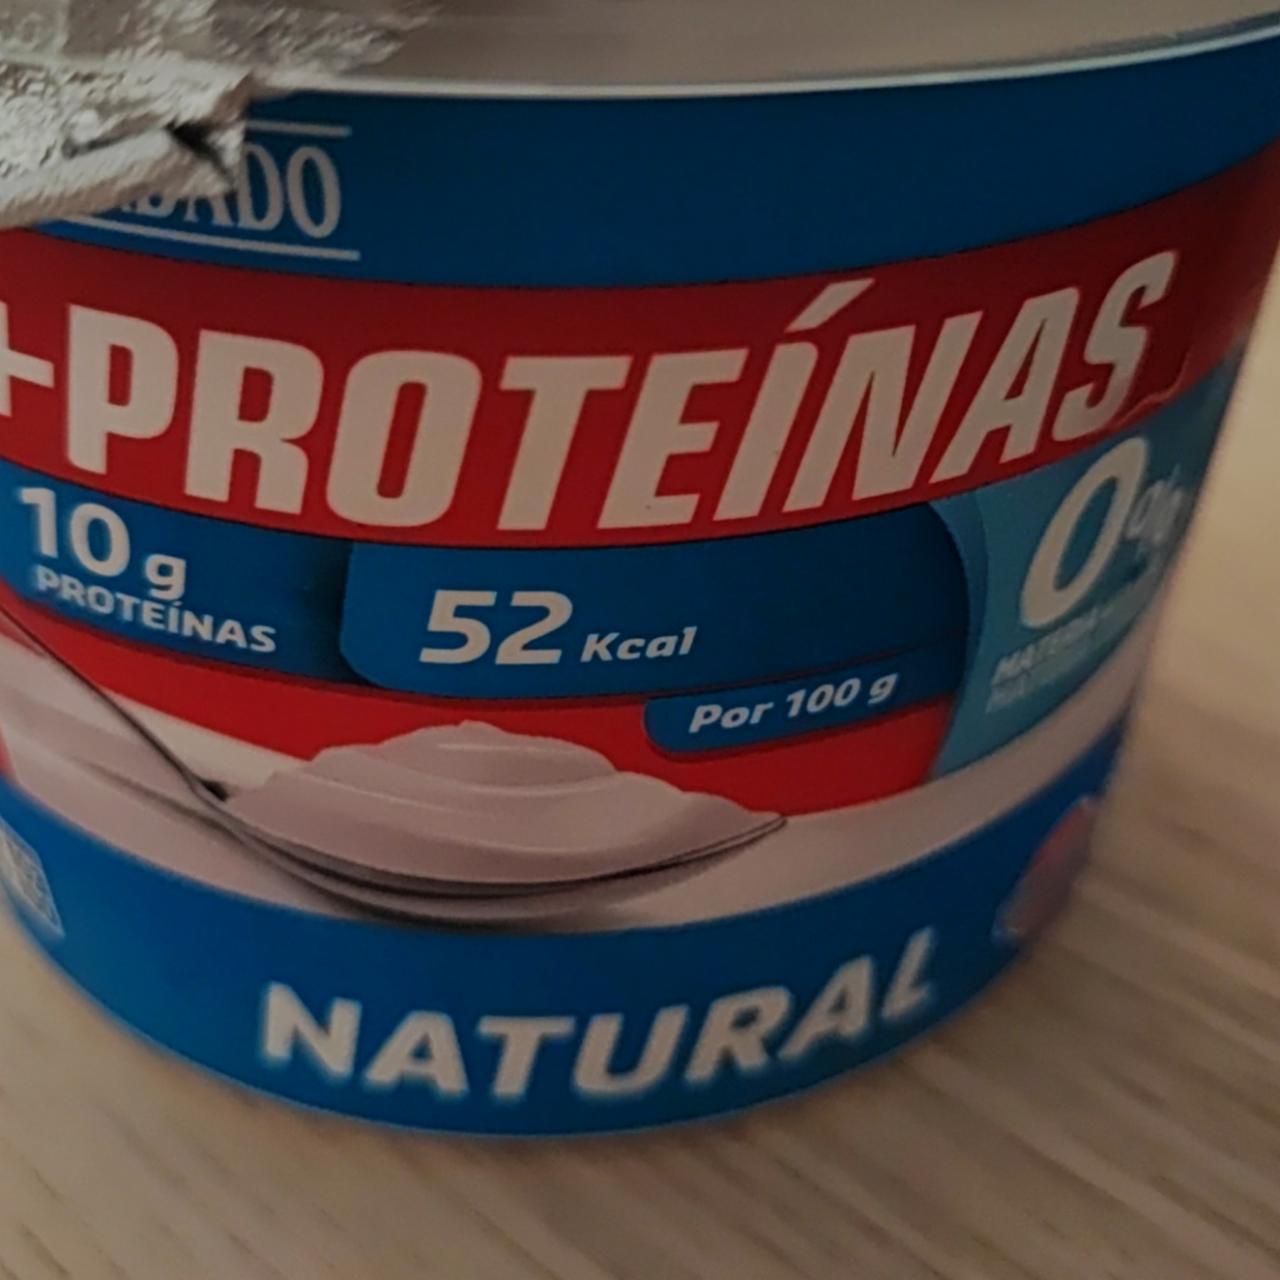 Fotografie - Biely jogurt 500g +Proteínas